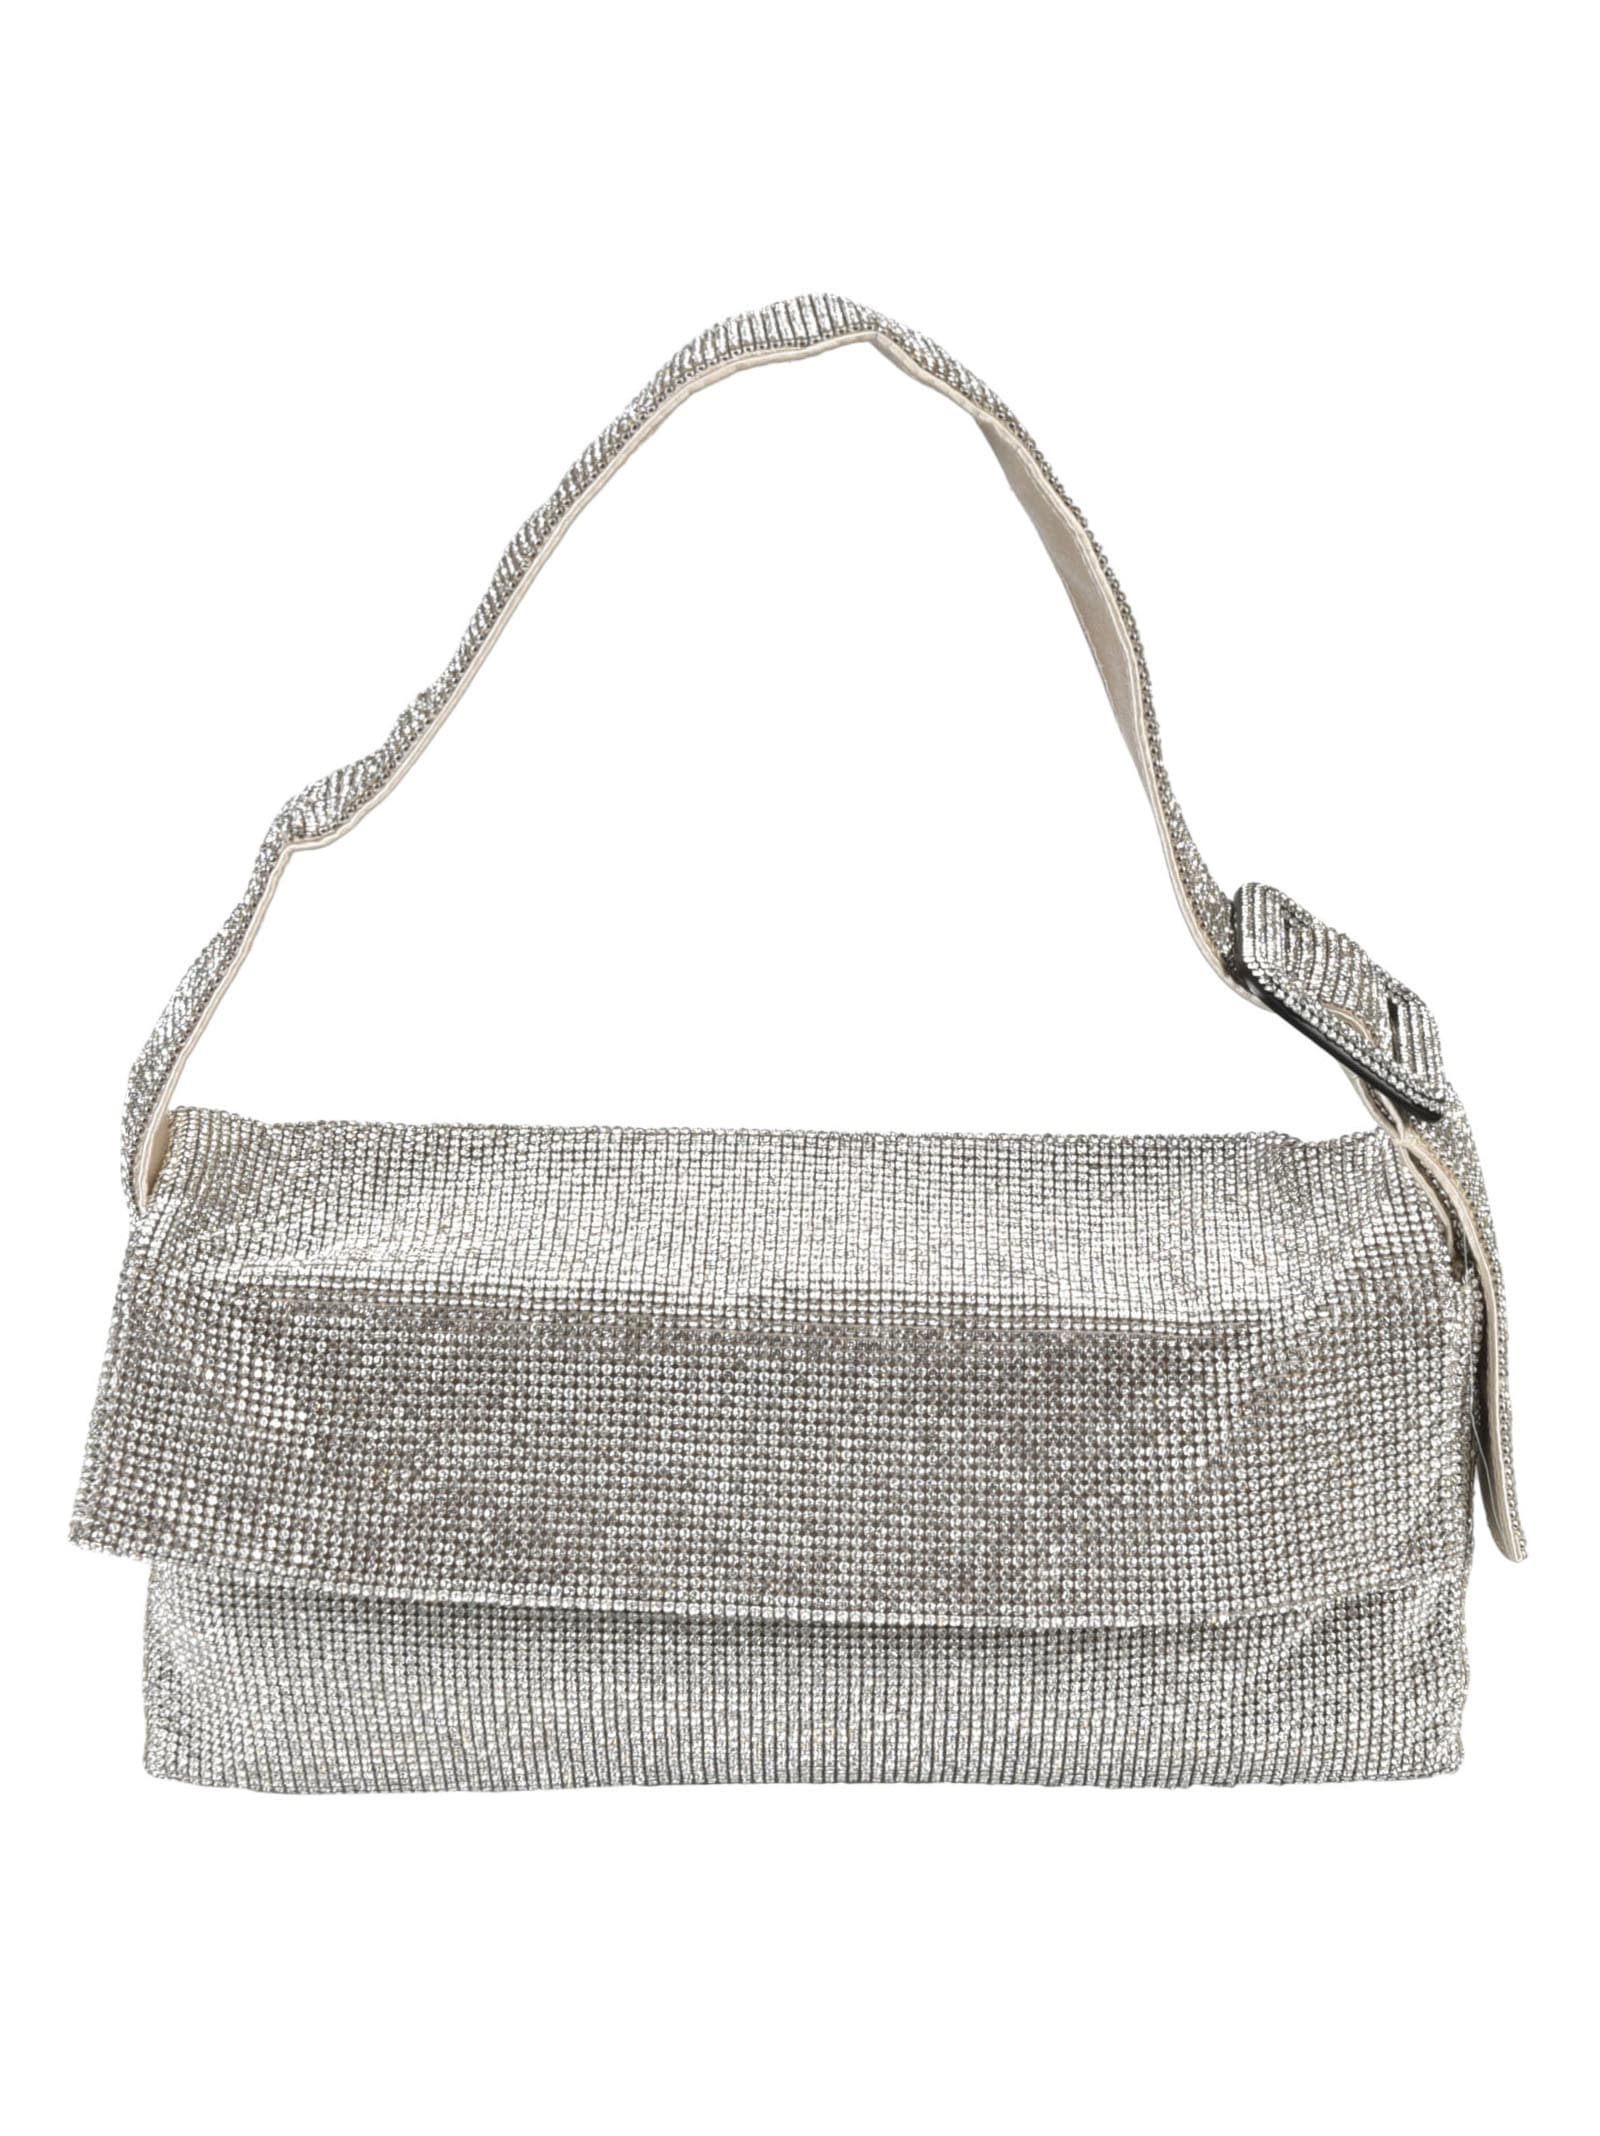 Benedetta Bruzziches Crystal Embellished Shoulder Bag